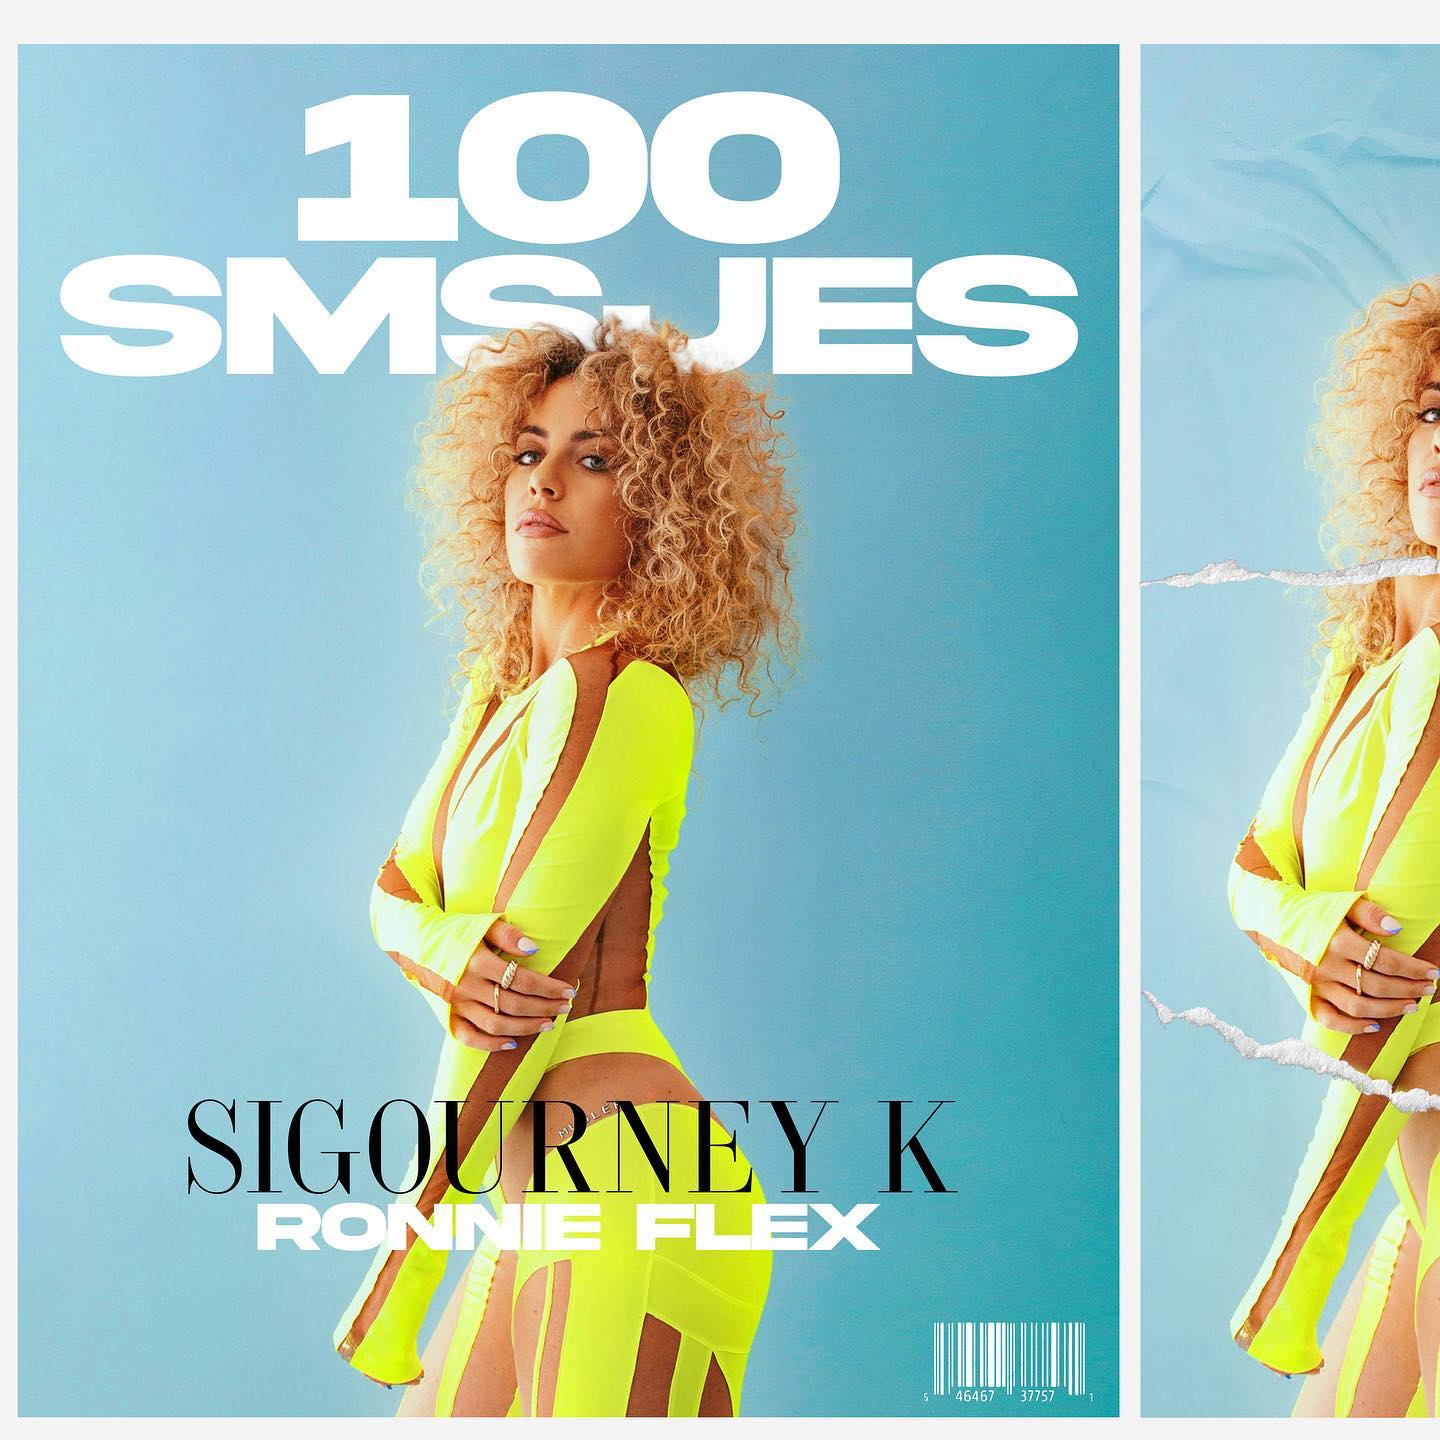 Sigourney K & Ronnie Flex — 100 SMSjes cover artwork